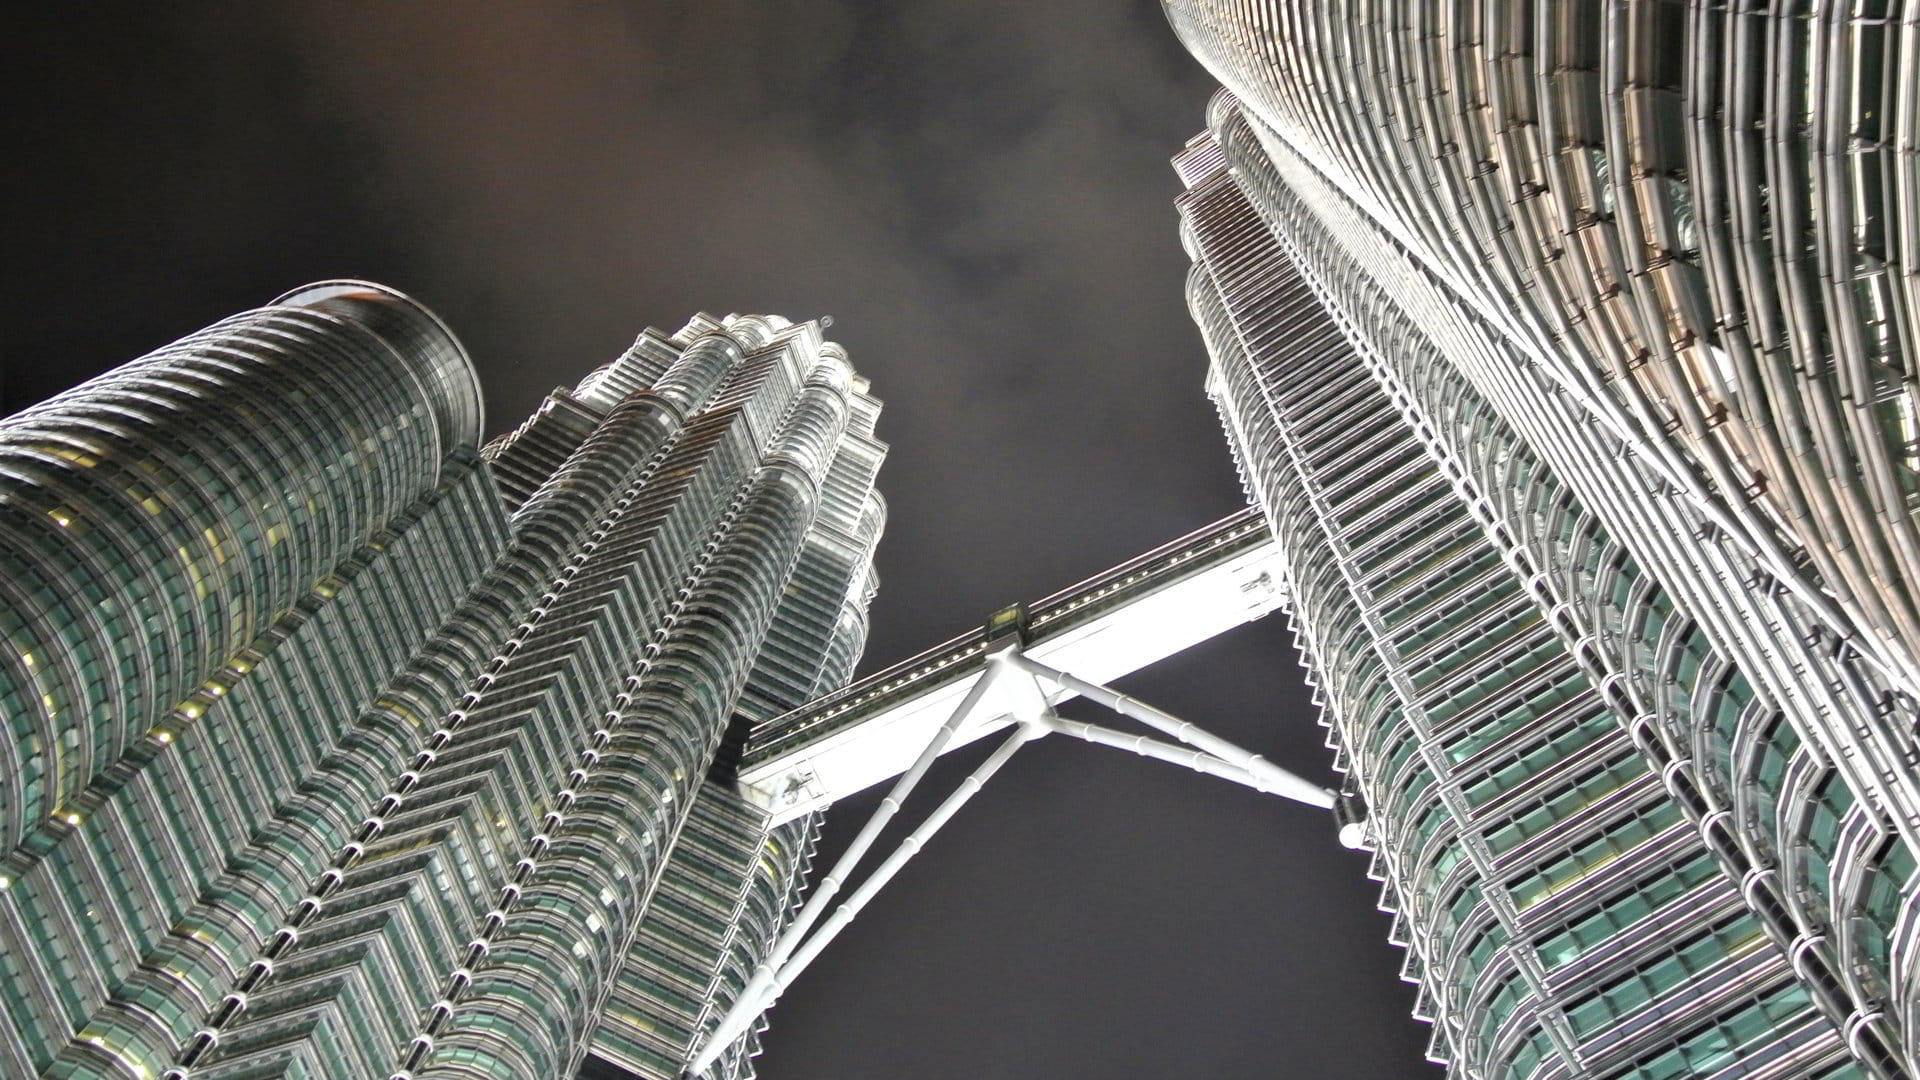 Malaisie, pays riche de contrastes